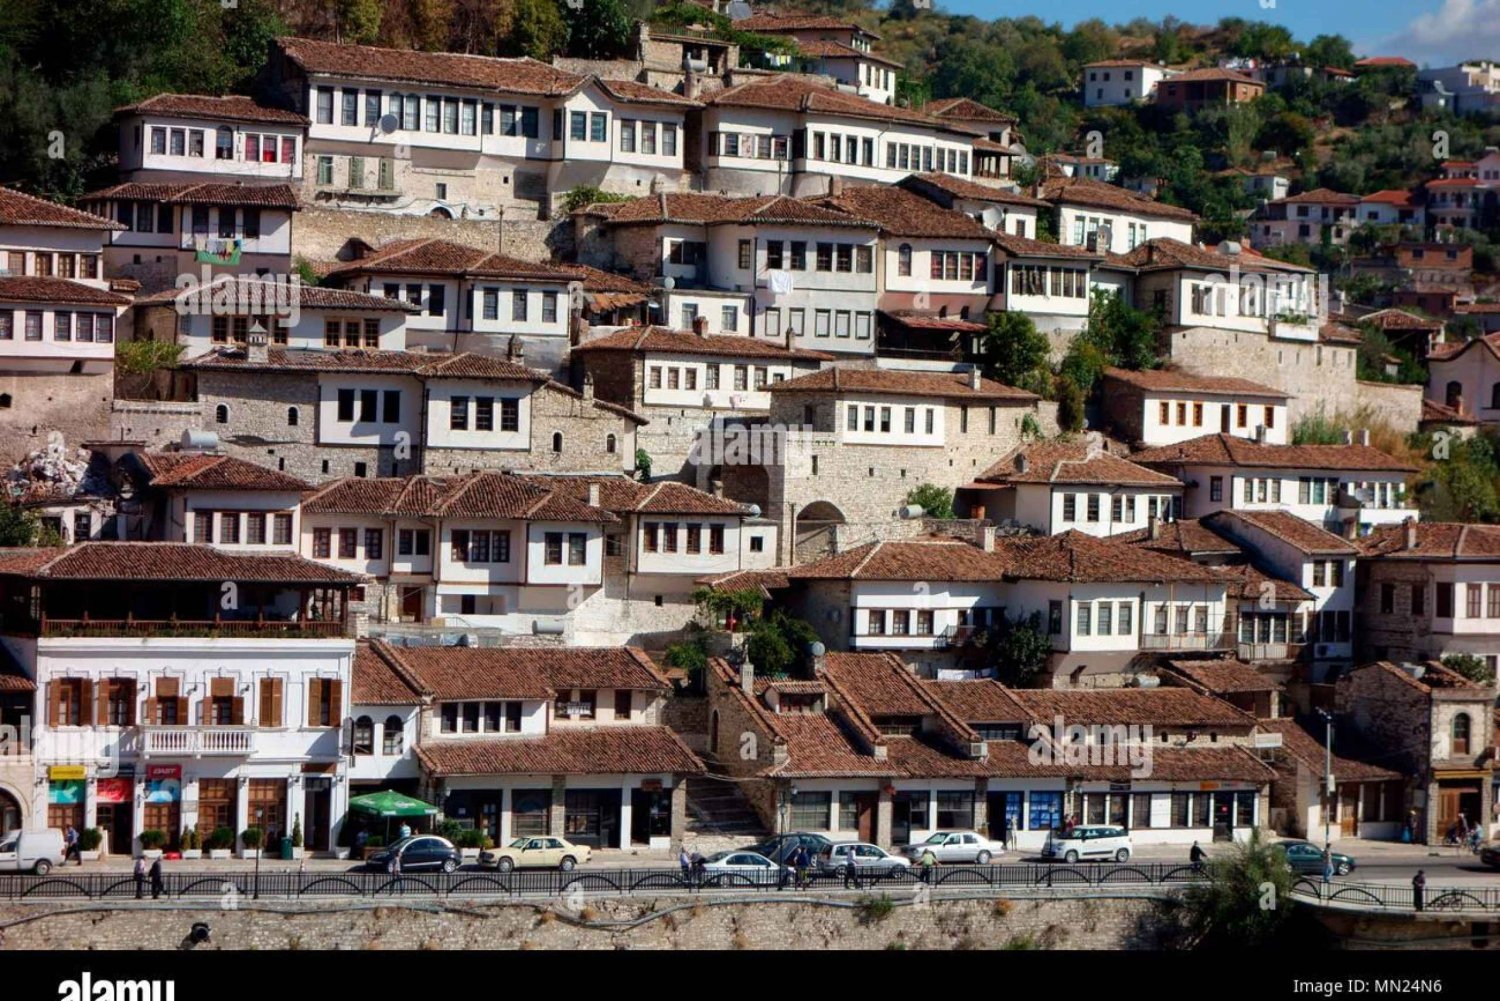 Ontdek Belshi en Berat: UNESCO Stad van Erfgoedwonderen